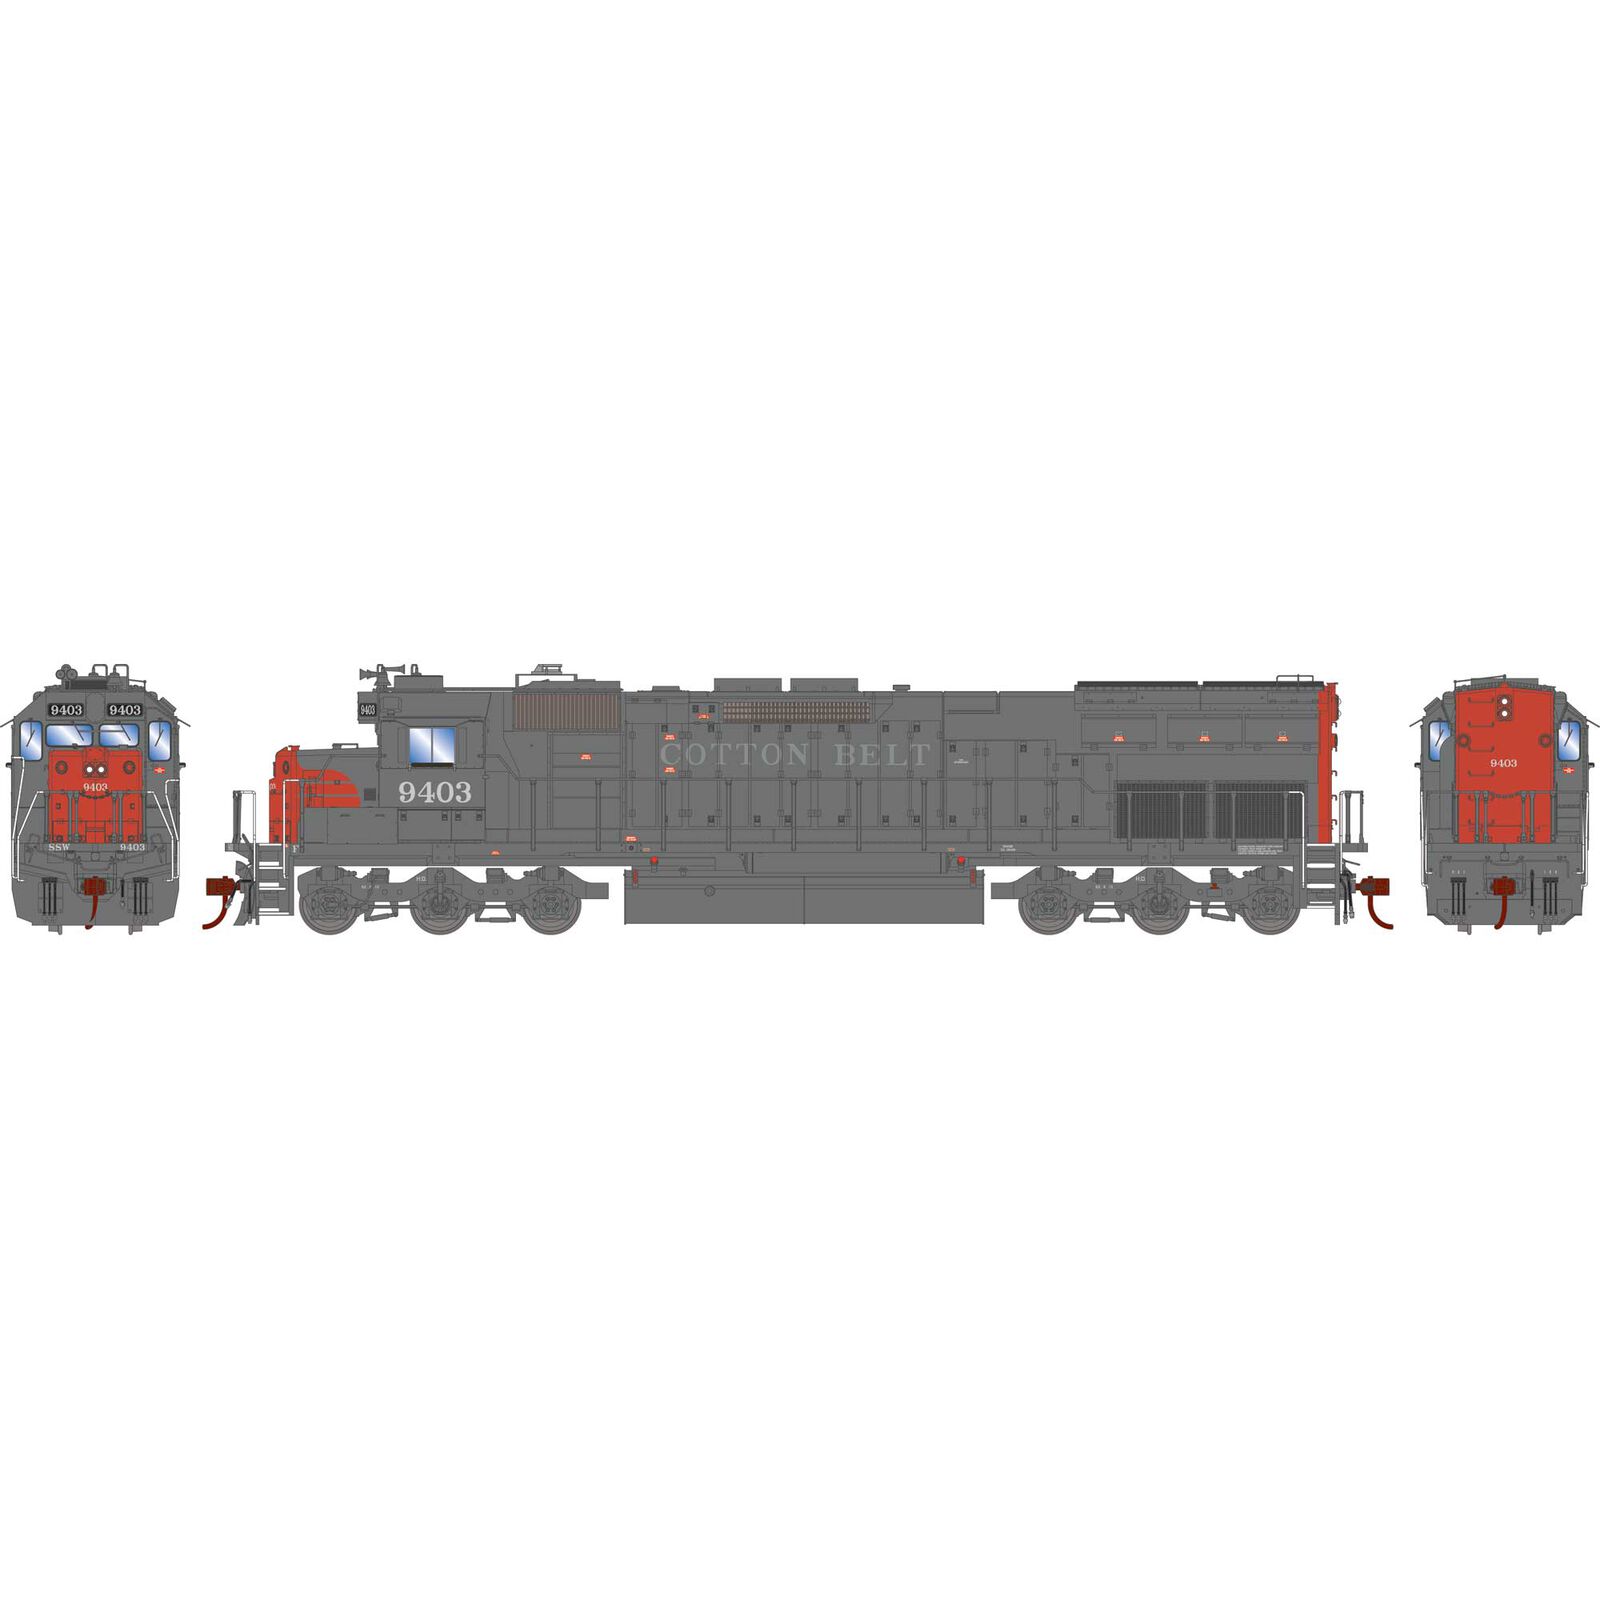 HO SD45T-2 Locomotive with DCC & Sound, Cotton Belt #9403